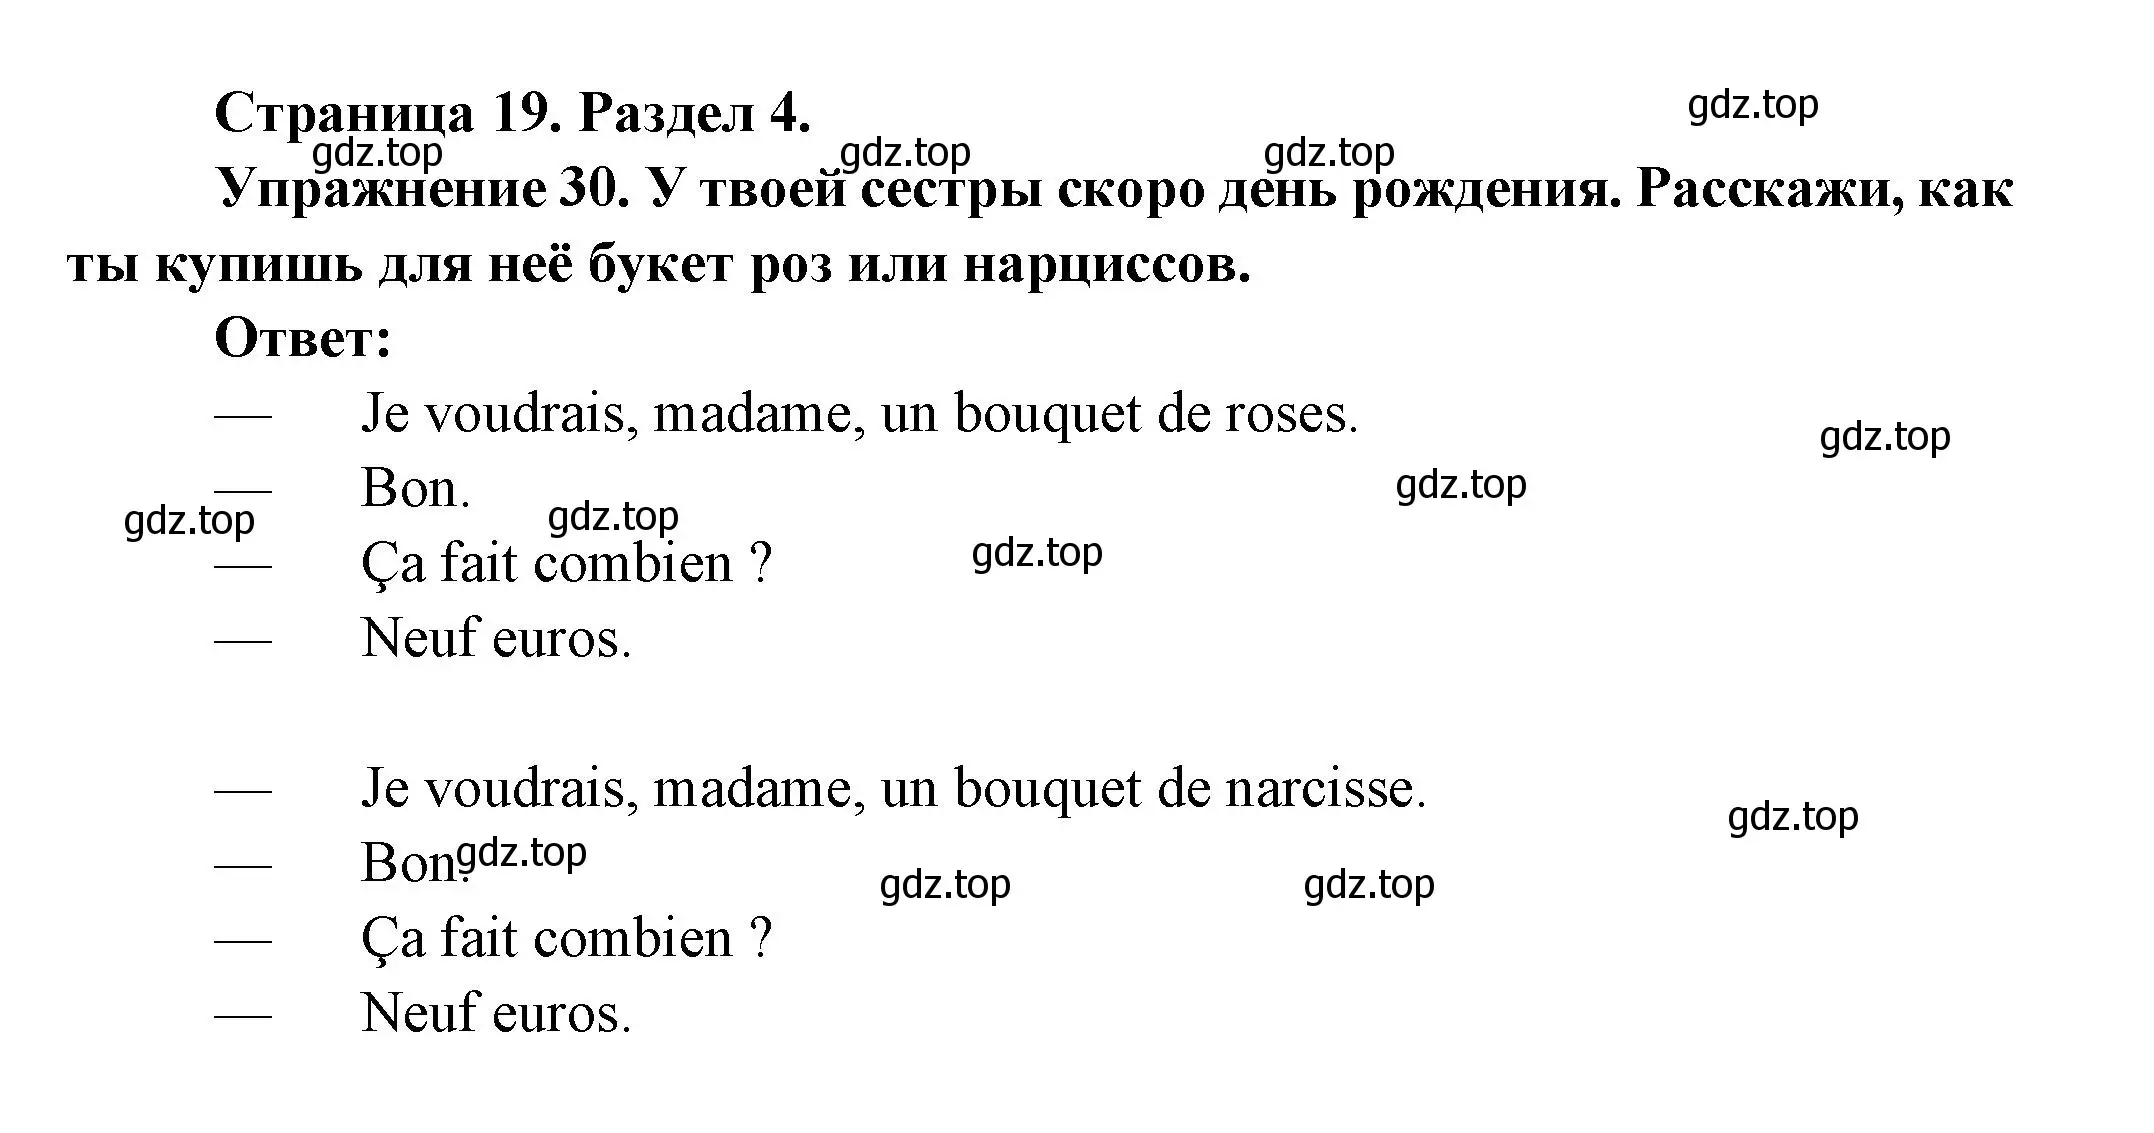 Решение номер 30 (страница 19) гдз по французскому языку 5 класс Береговская, Белосельская, учебник 2 часть